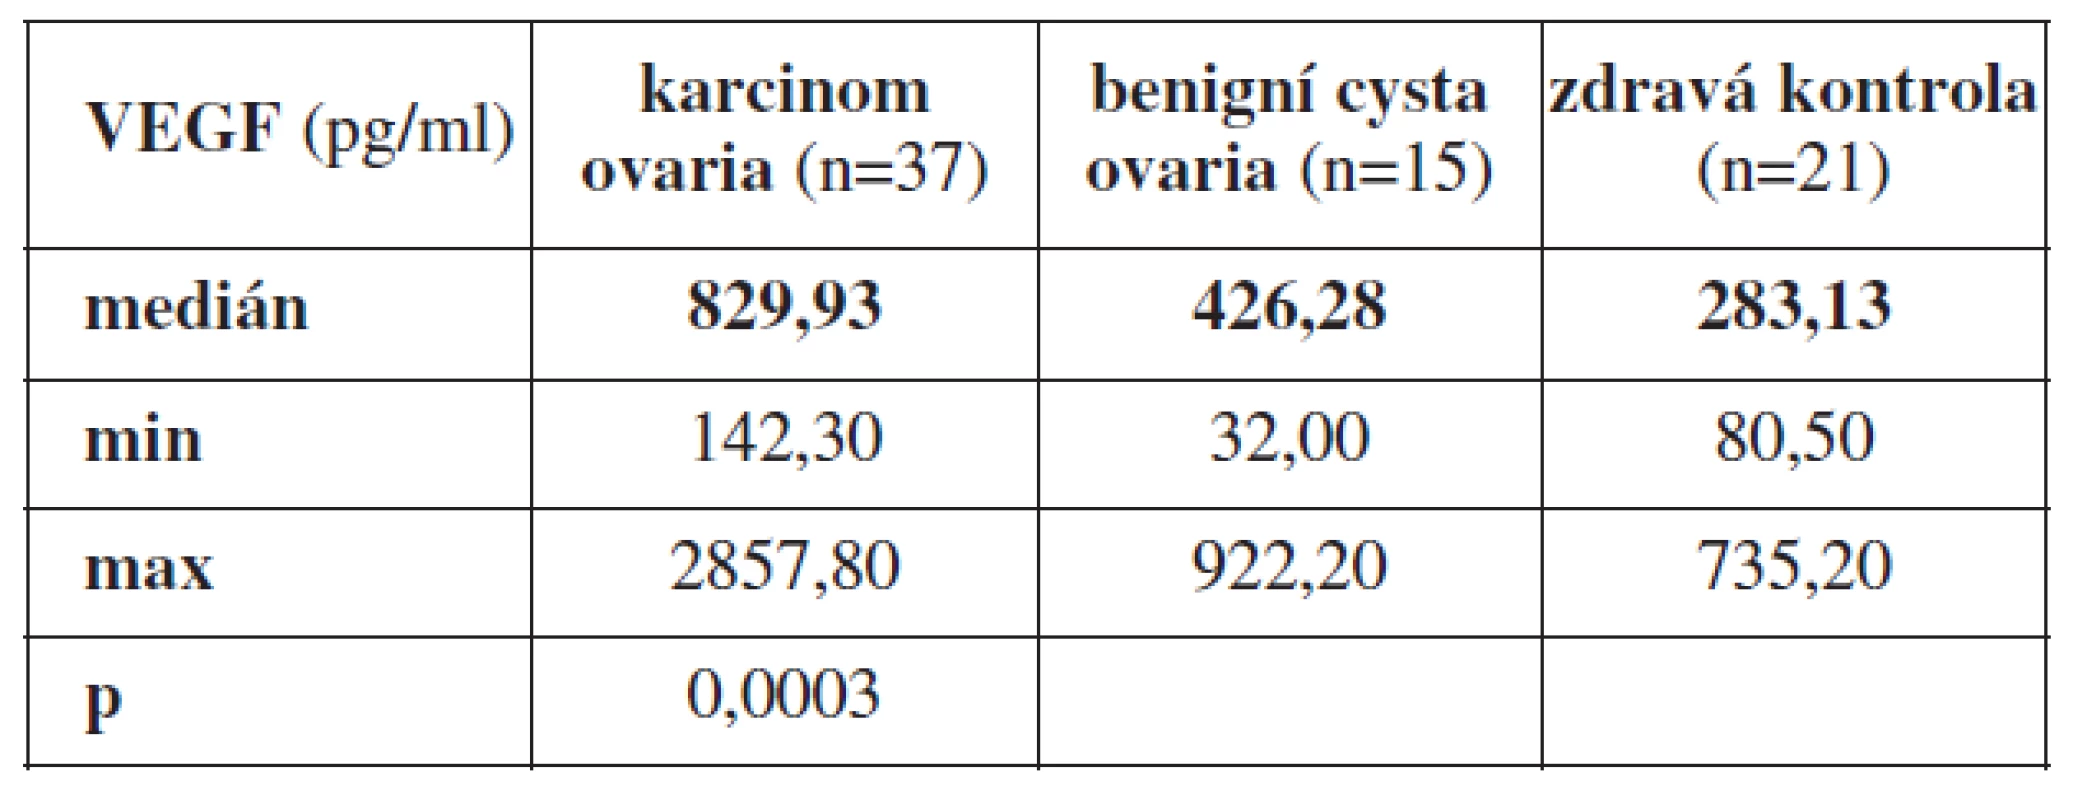 Průměrné hodnoty VEGF z periferní krve odebrané před primární operací u pacientek s karcinomem ovaria, benigní cystou ovaria a zdravých žen